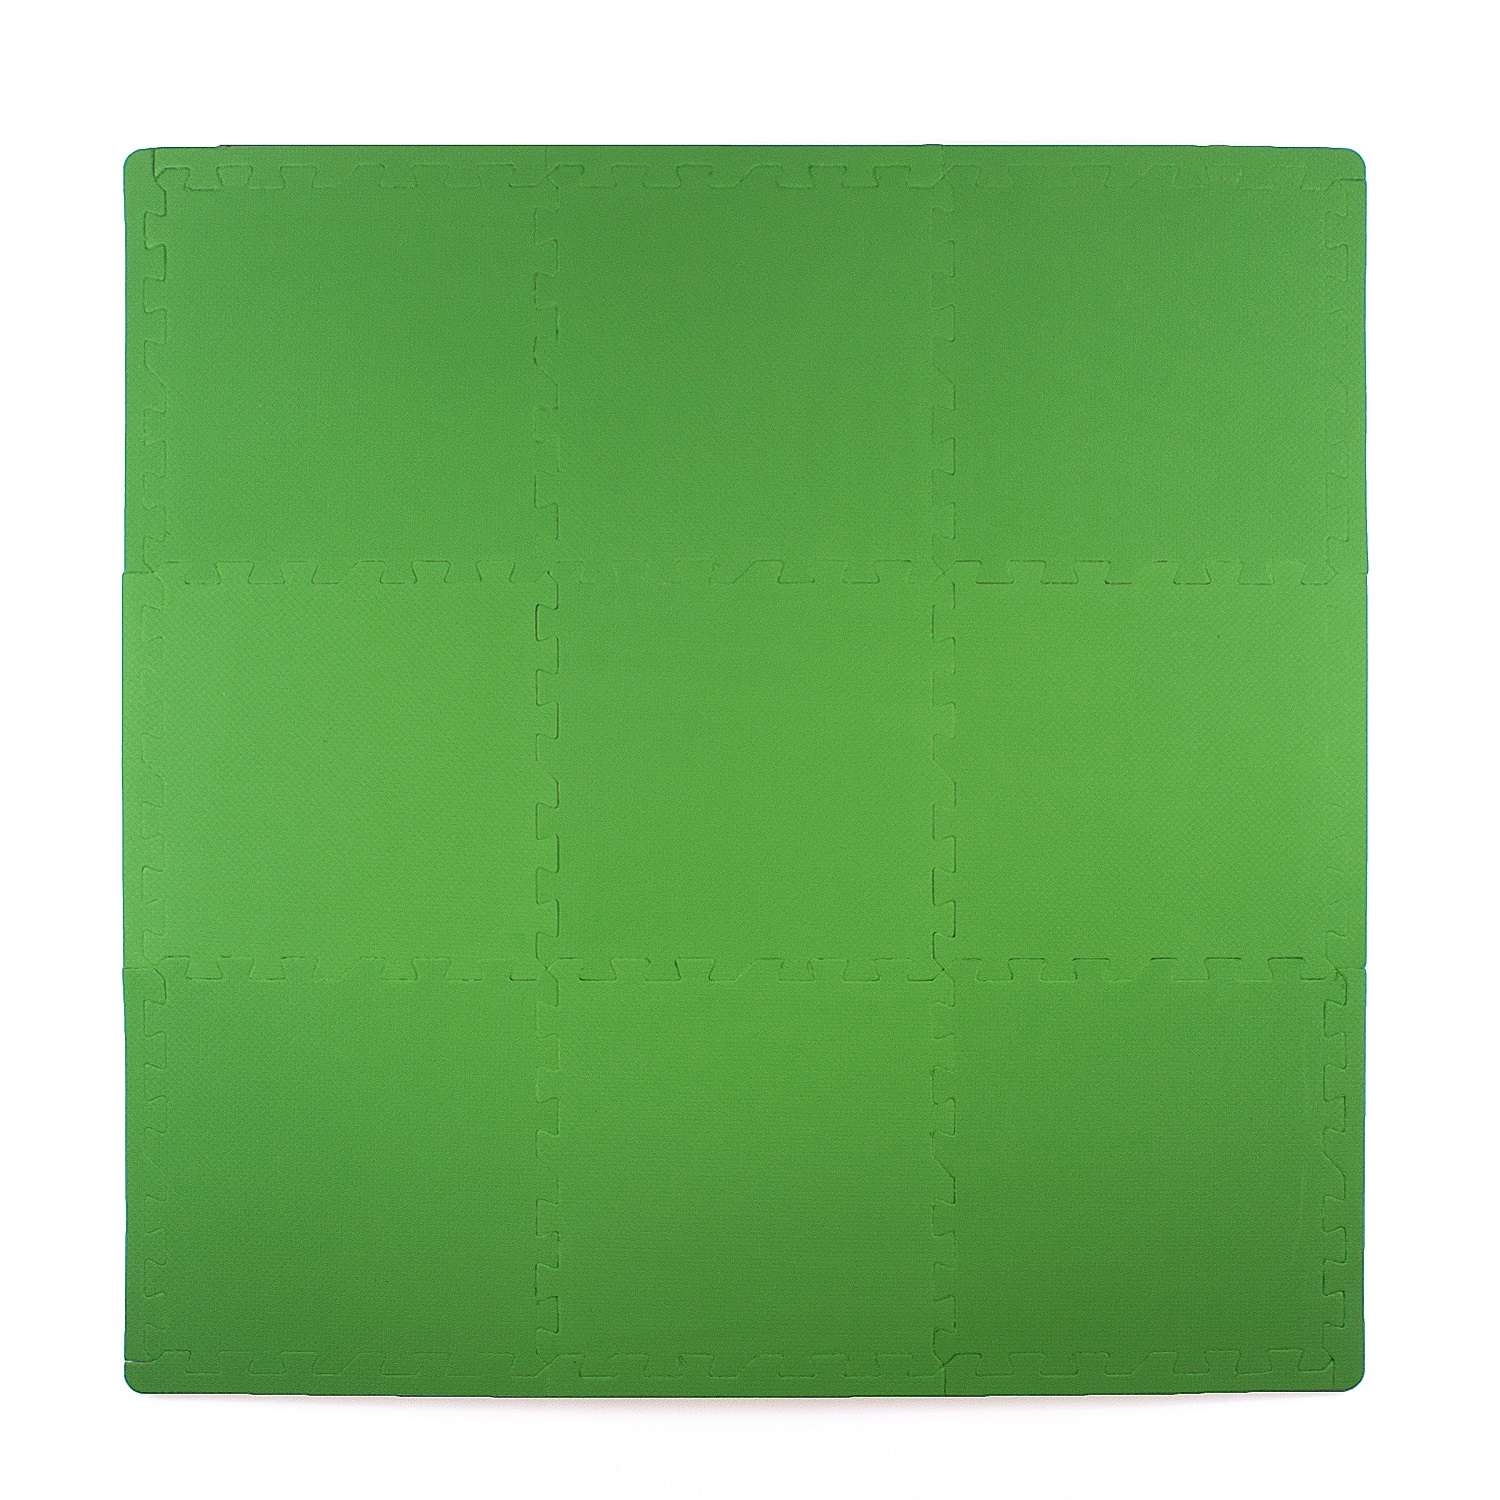 Развивающий детский коврик Eco cover игровой пазл для ползания мягкий пол зеленый 30х30 - фото 2